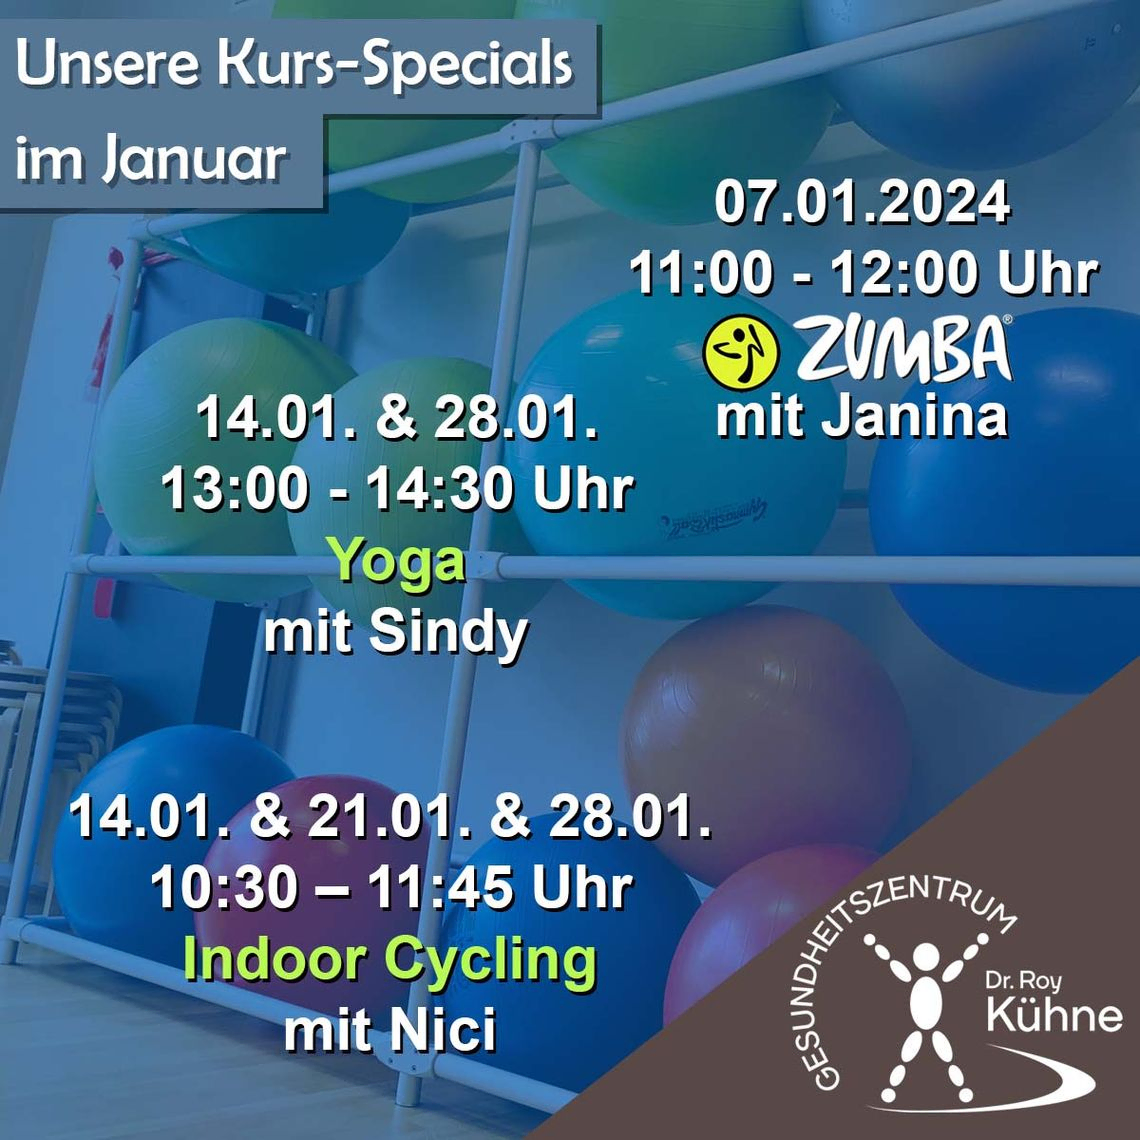 Kurs-Specials Januar Fitnesskurse im Gesundheitszentrum Dr. Roy Kühne